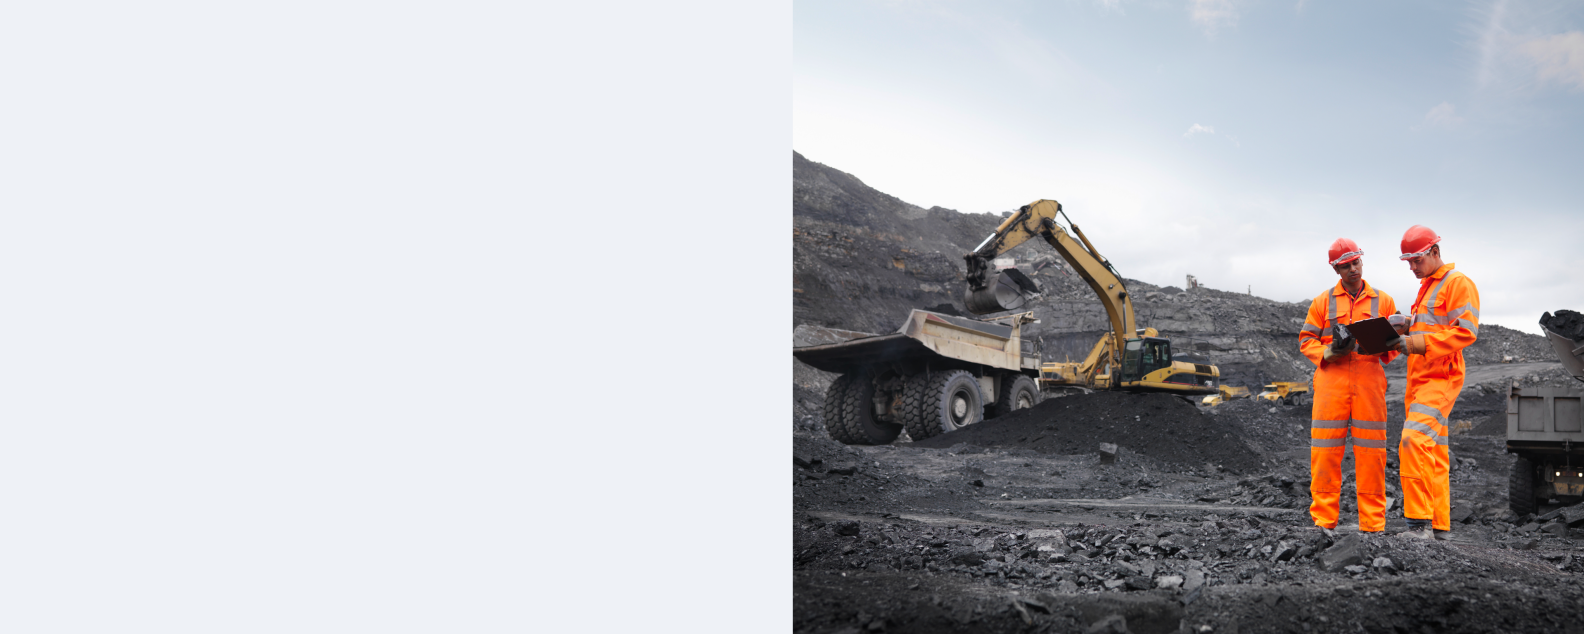 Dos mineros del carbón con equipo de seguridad consultan un dispositivo móvil (tableta)